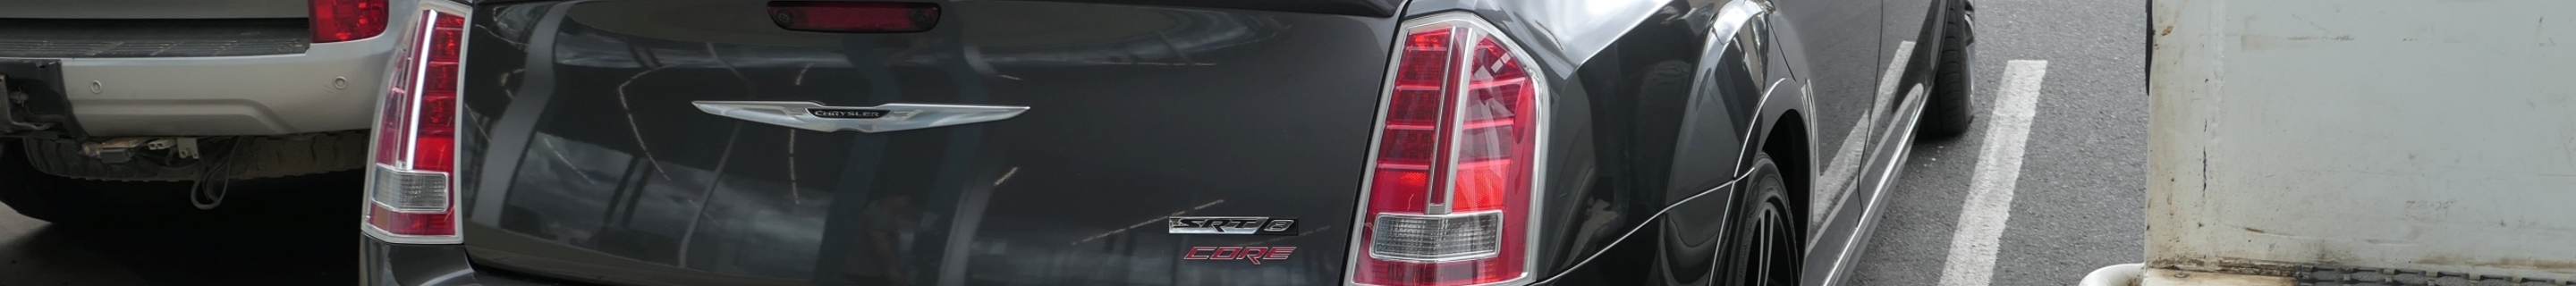 Chrysler 300C SRT8 2013 Core